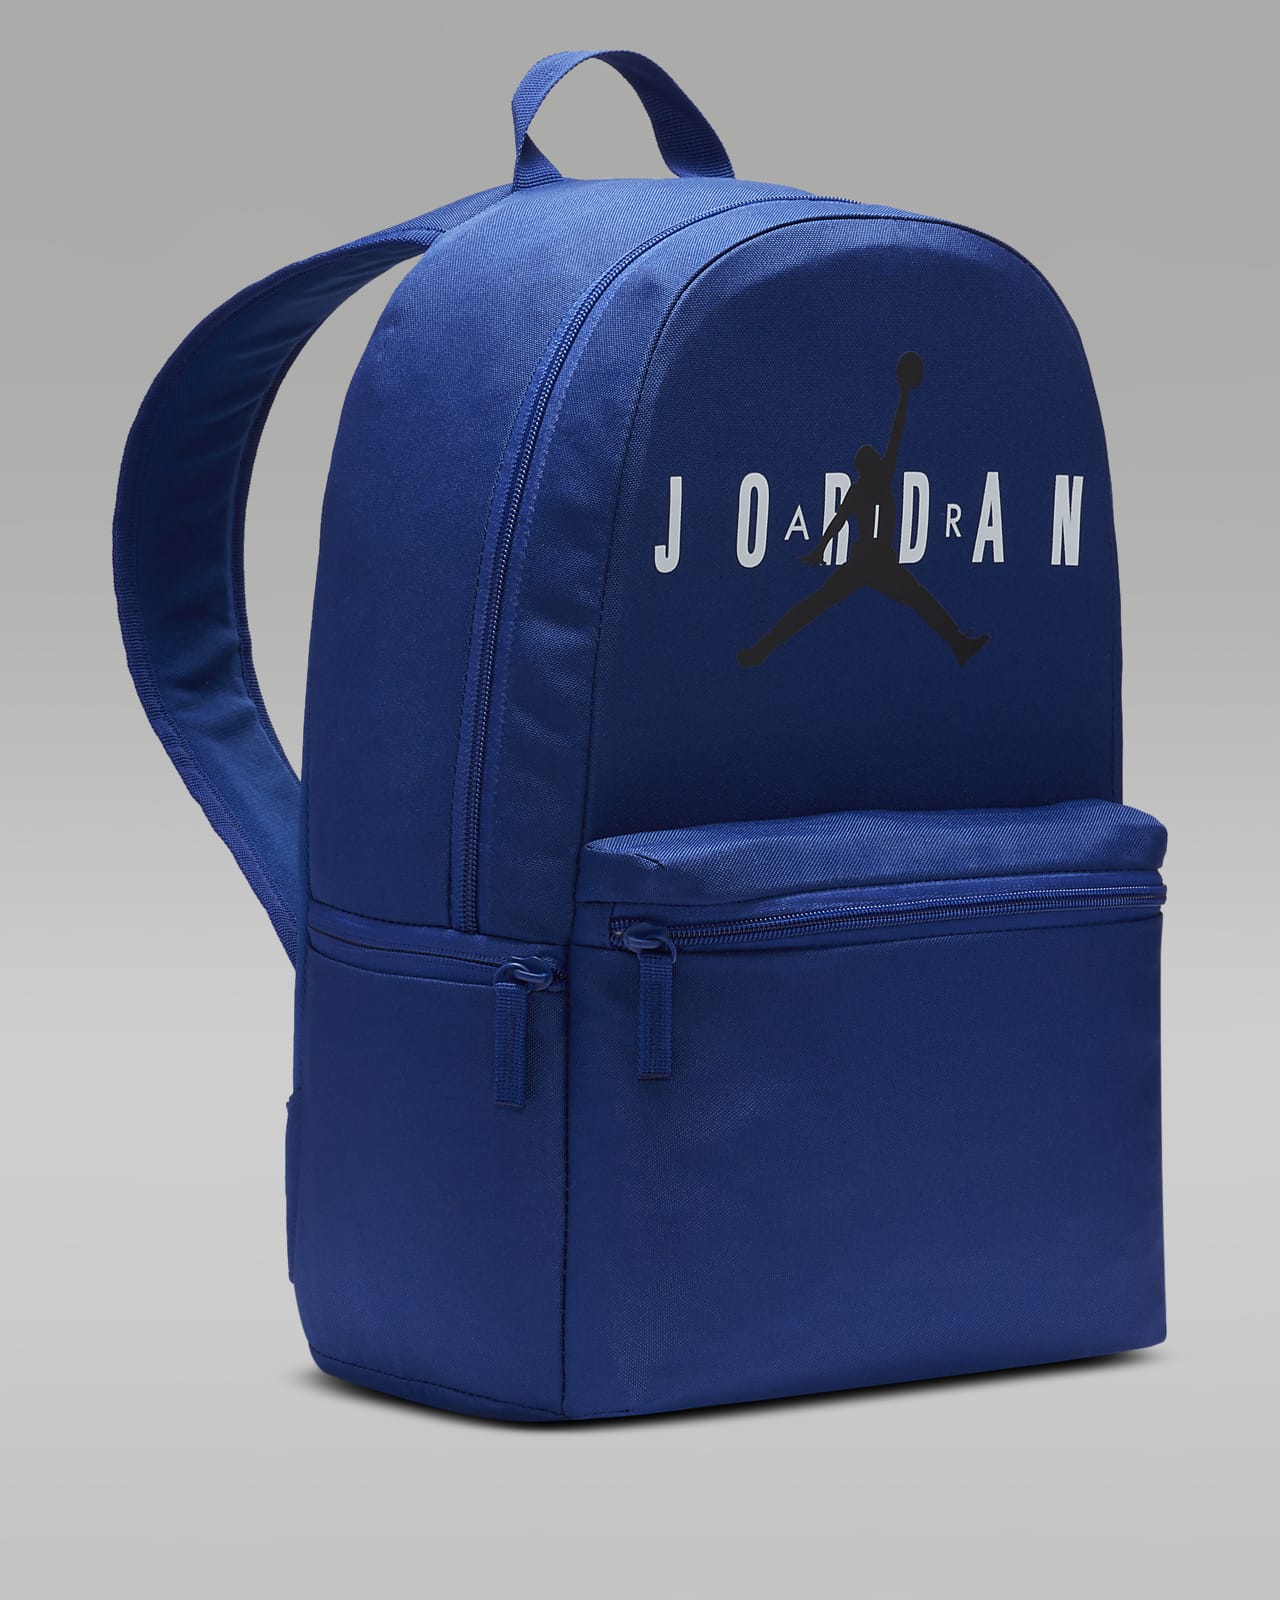 Jordan - Sac à dos - Bleu